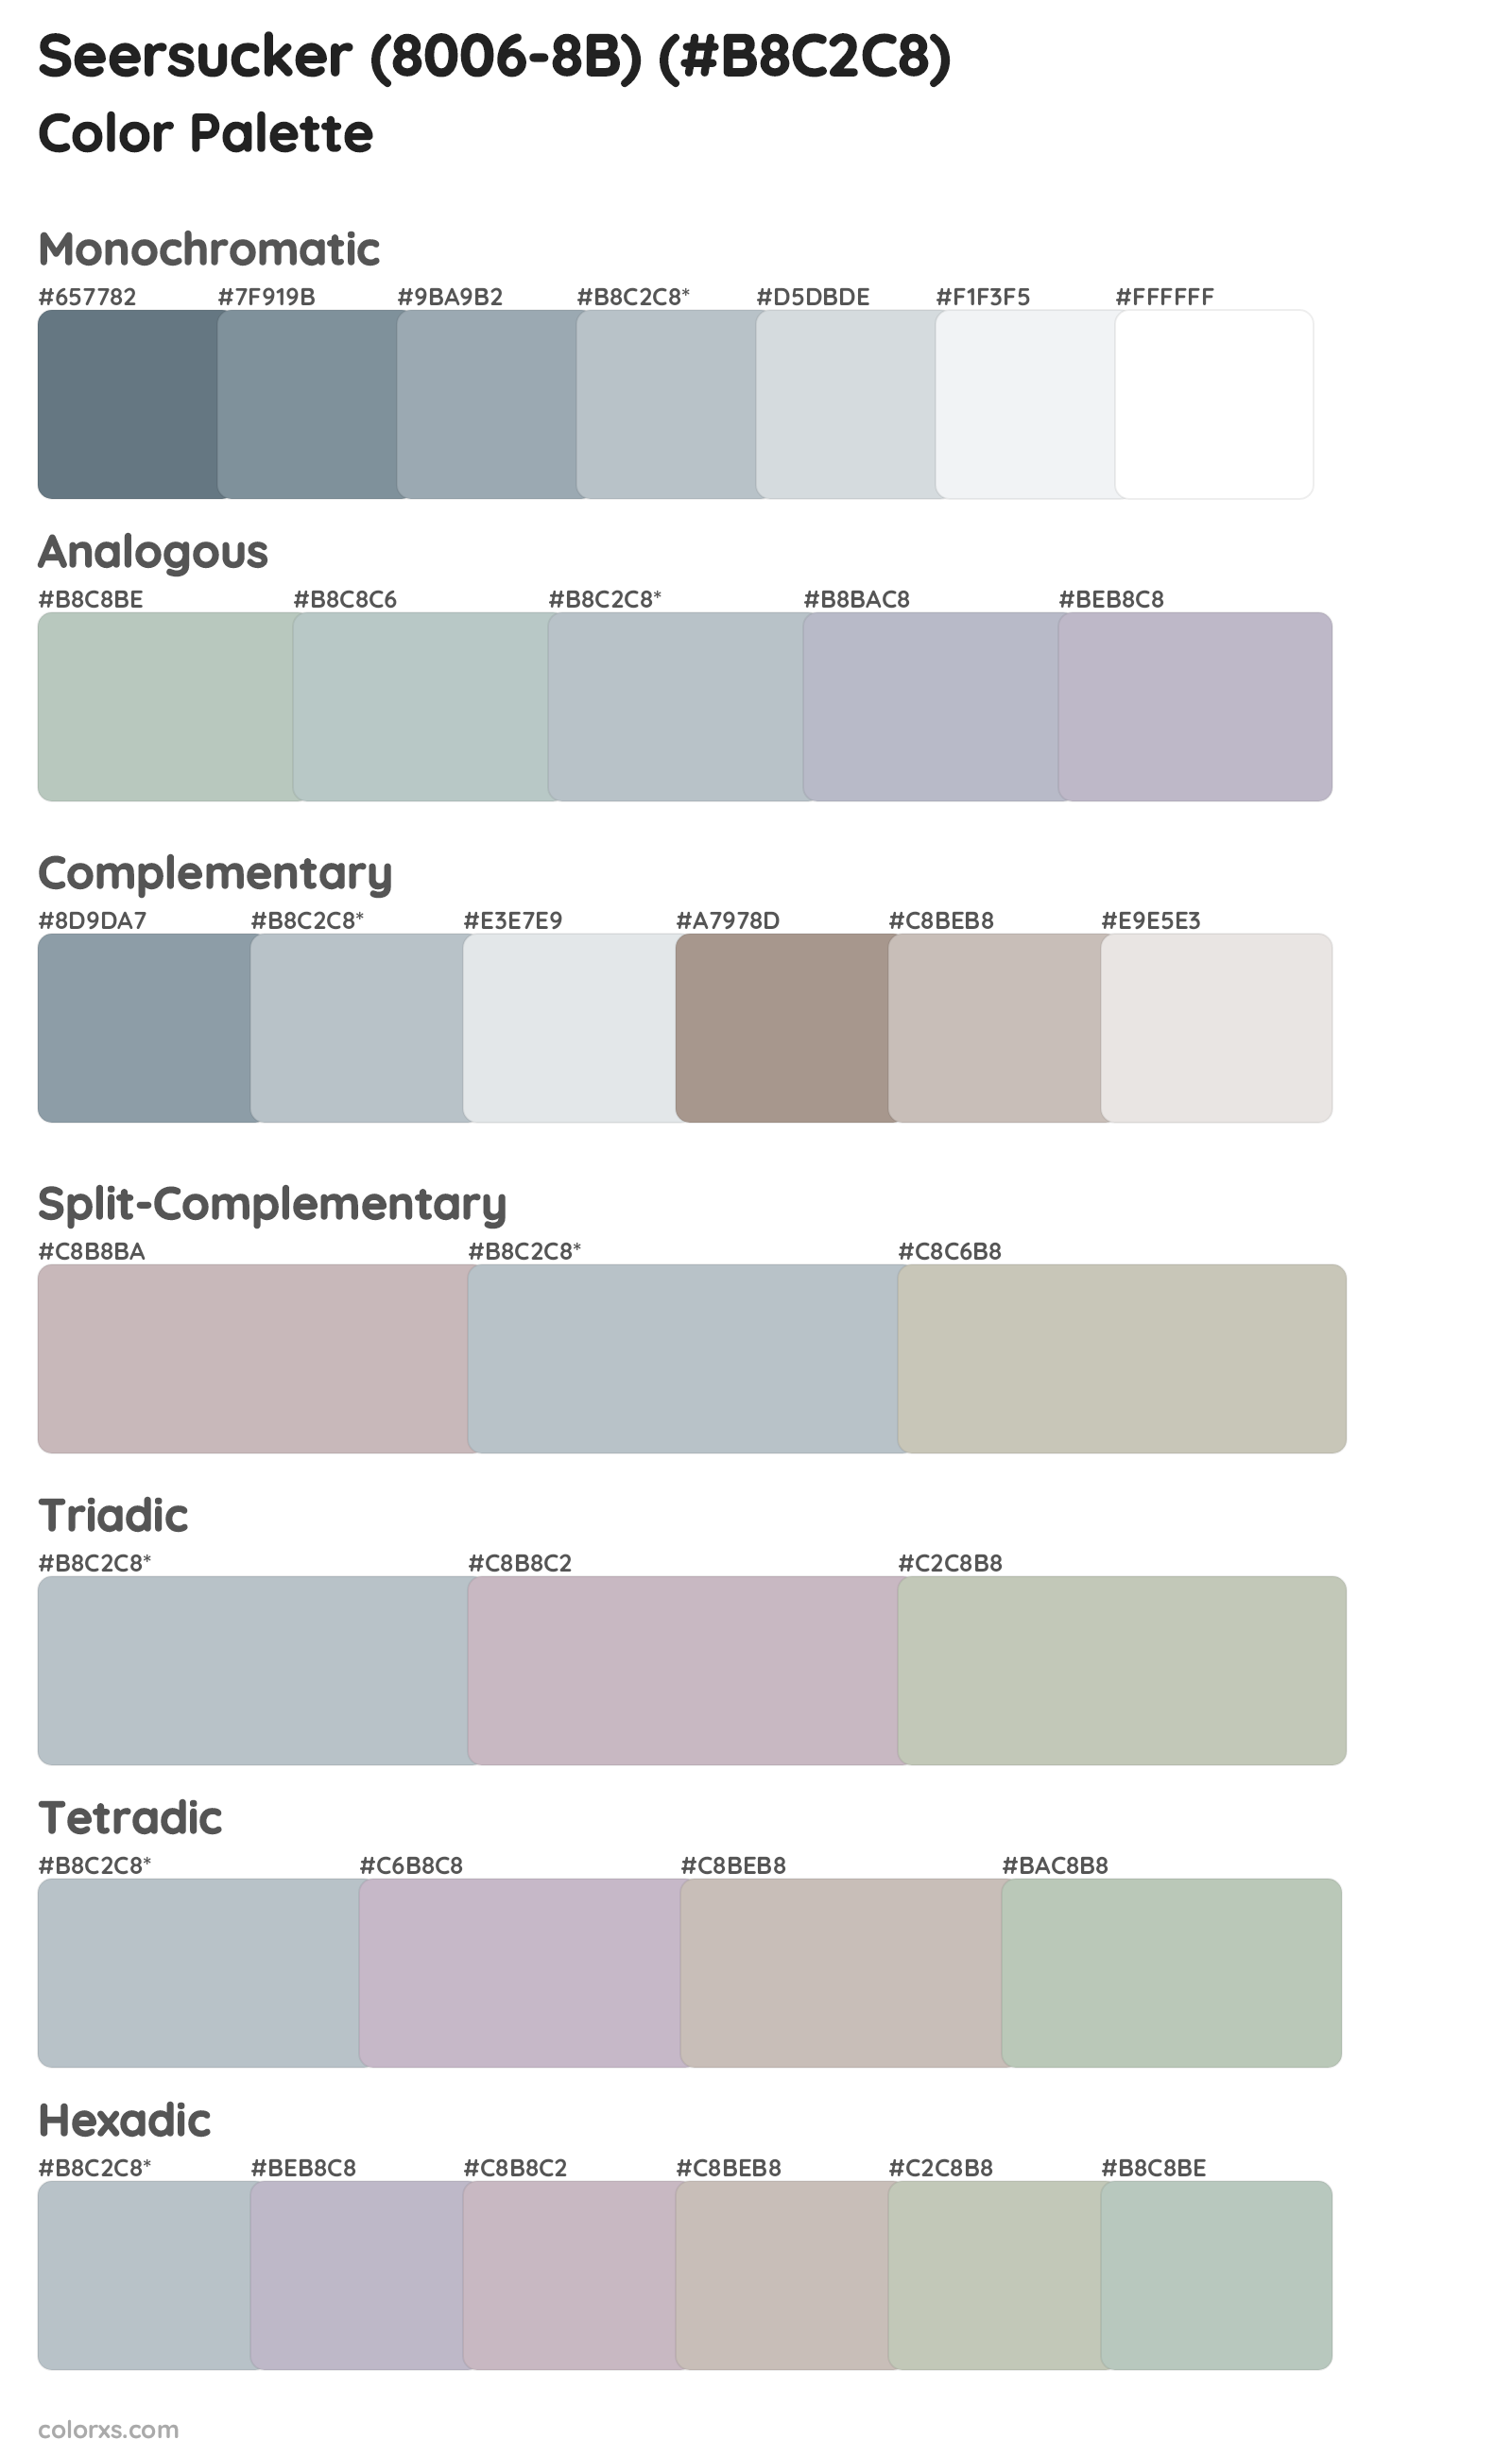 Seersucker (8006-8B) Color Scheme Palettes